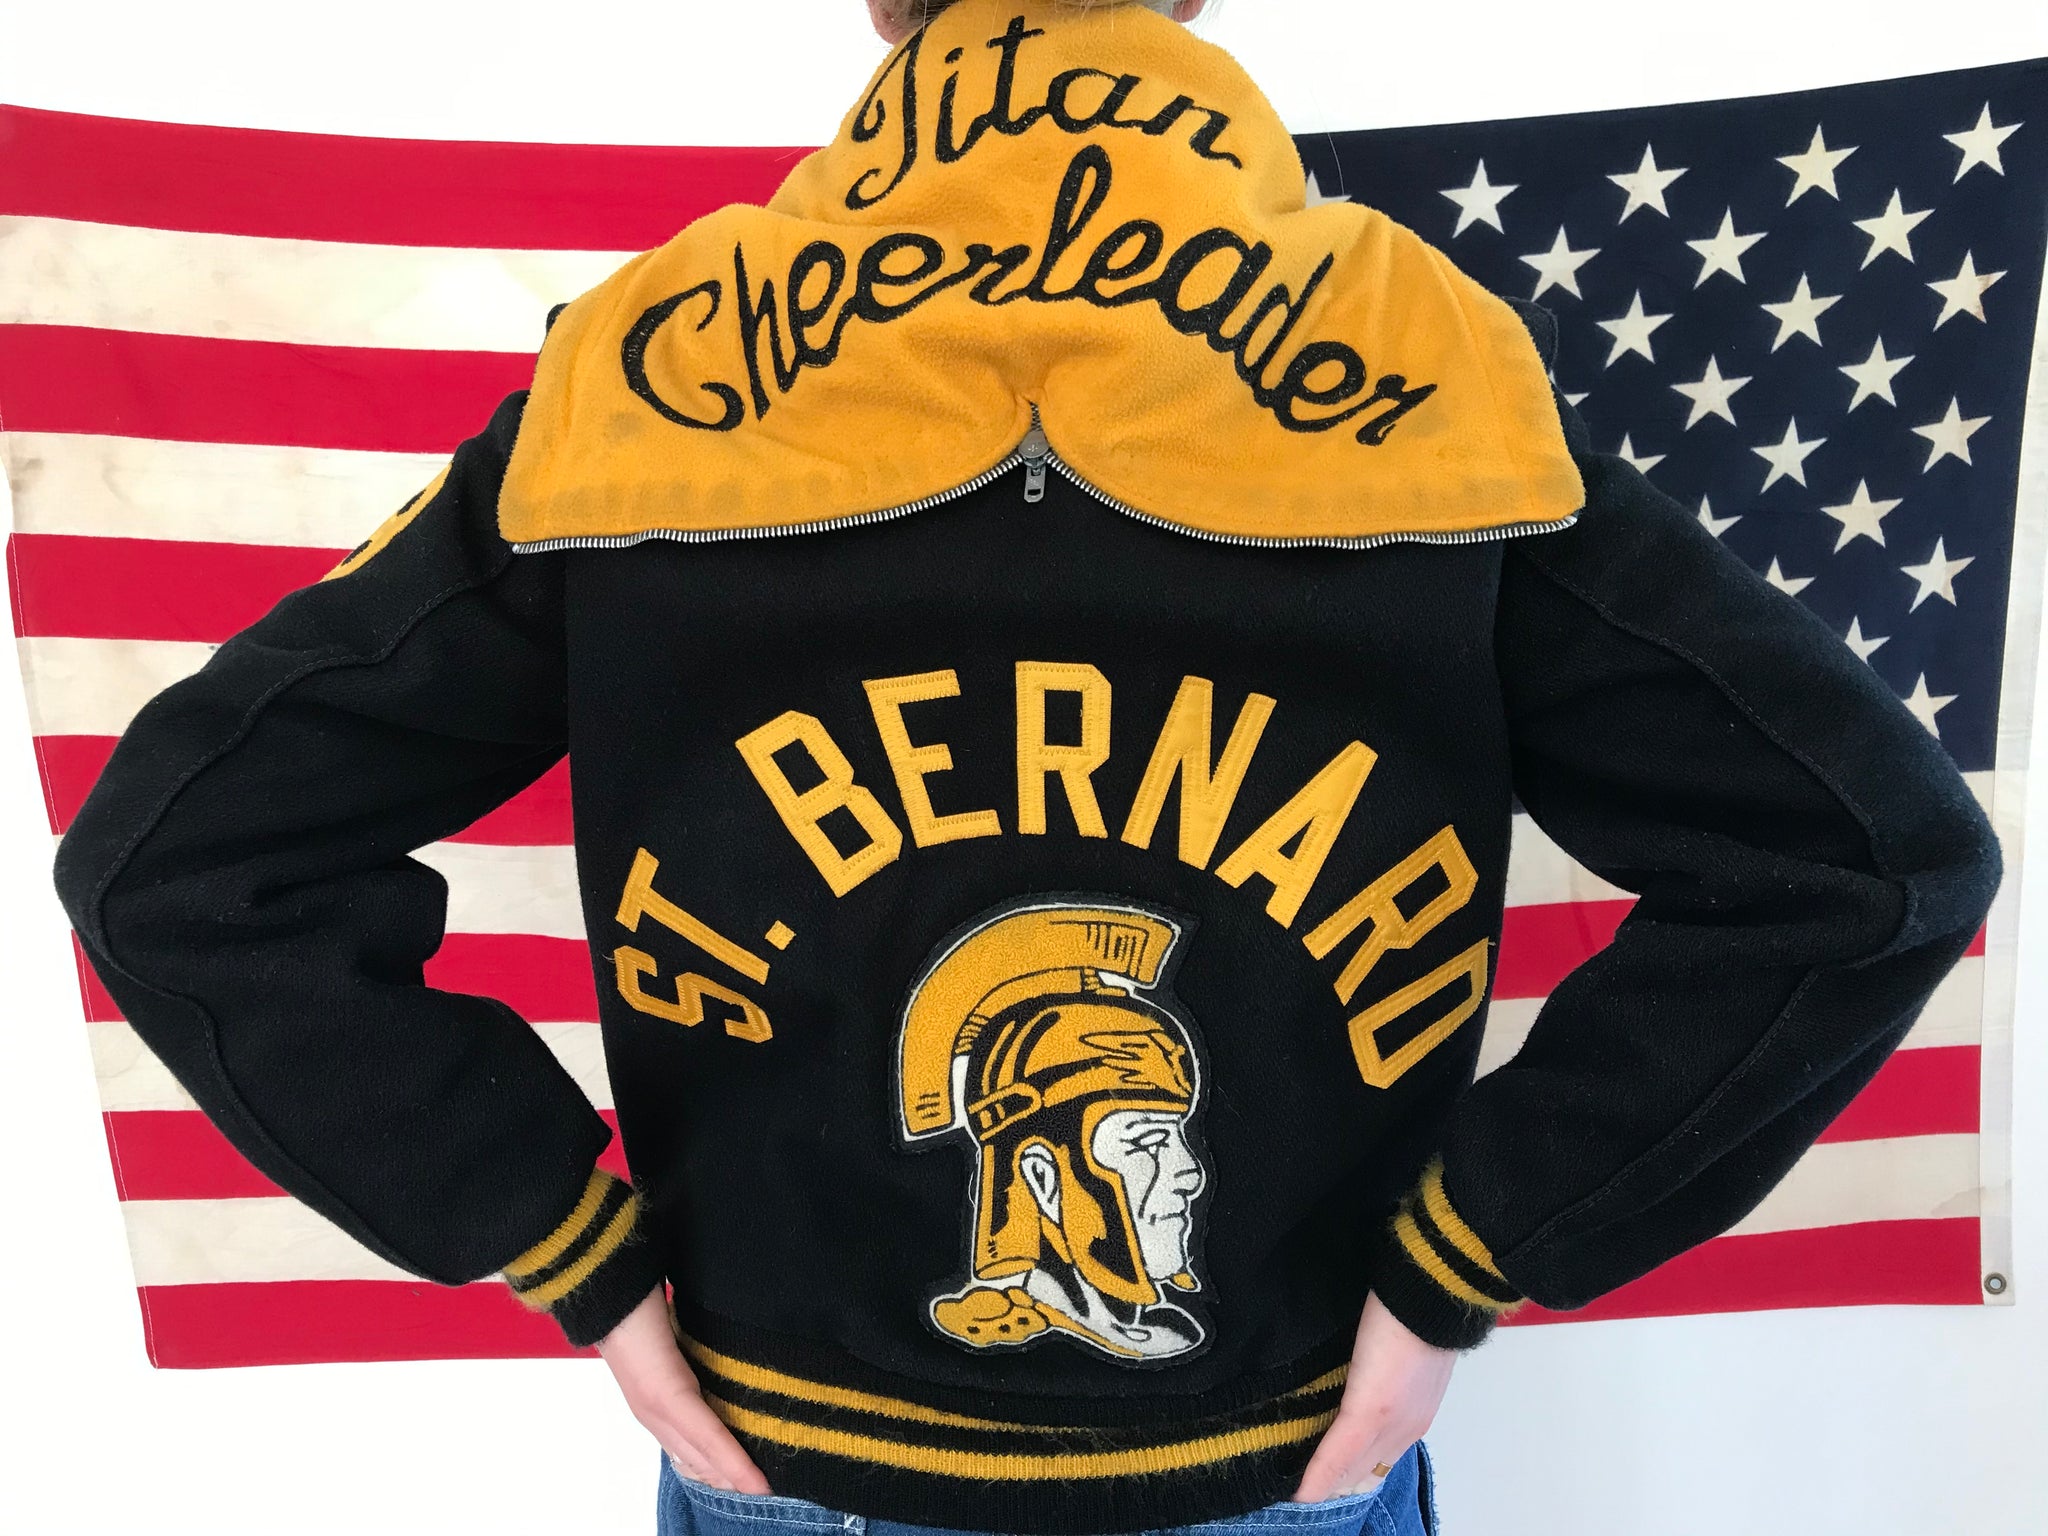 College Cheerleader Hooded Women’s 1980’s Vintage Wool Jacket